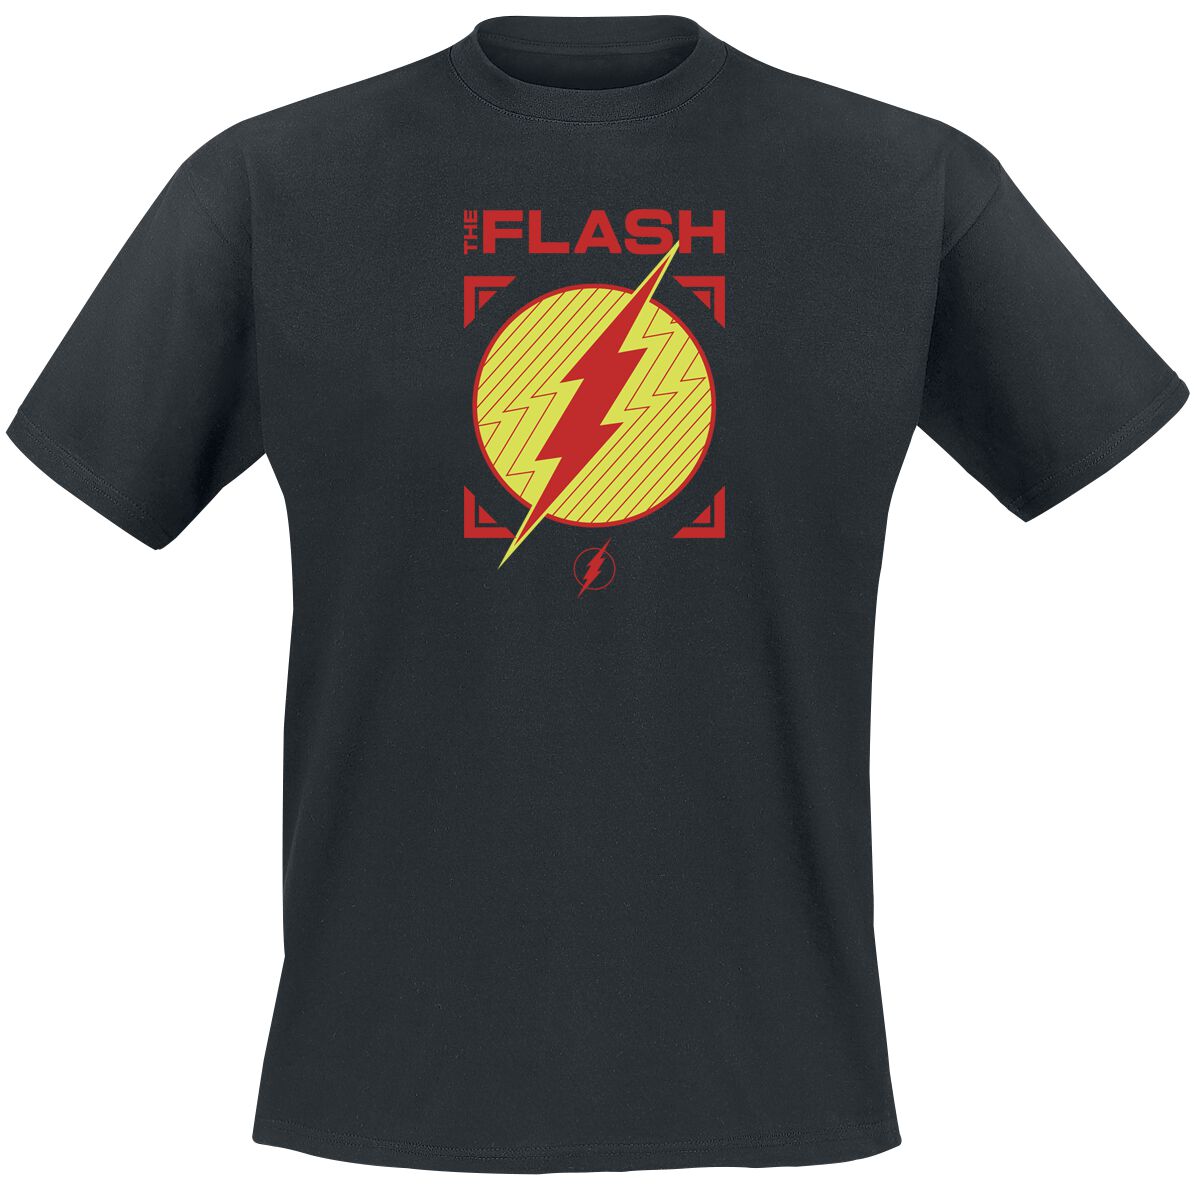 The Flash - DC Comics T-Shirt - Flash - Central City All Stars - S bis XXL - für Männer - Größe L - schwarz  - EMP exklusives Merchandise!